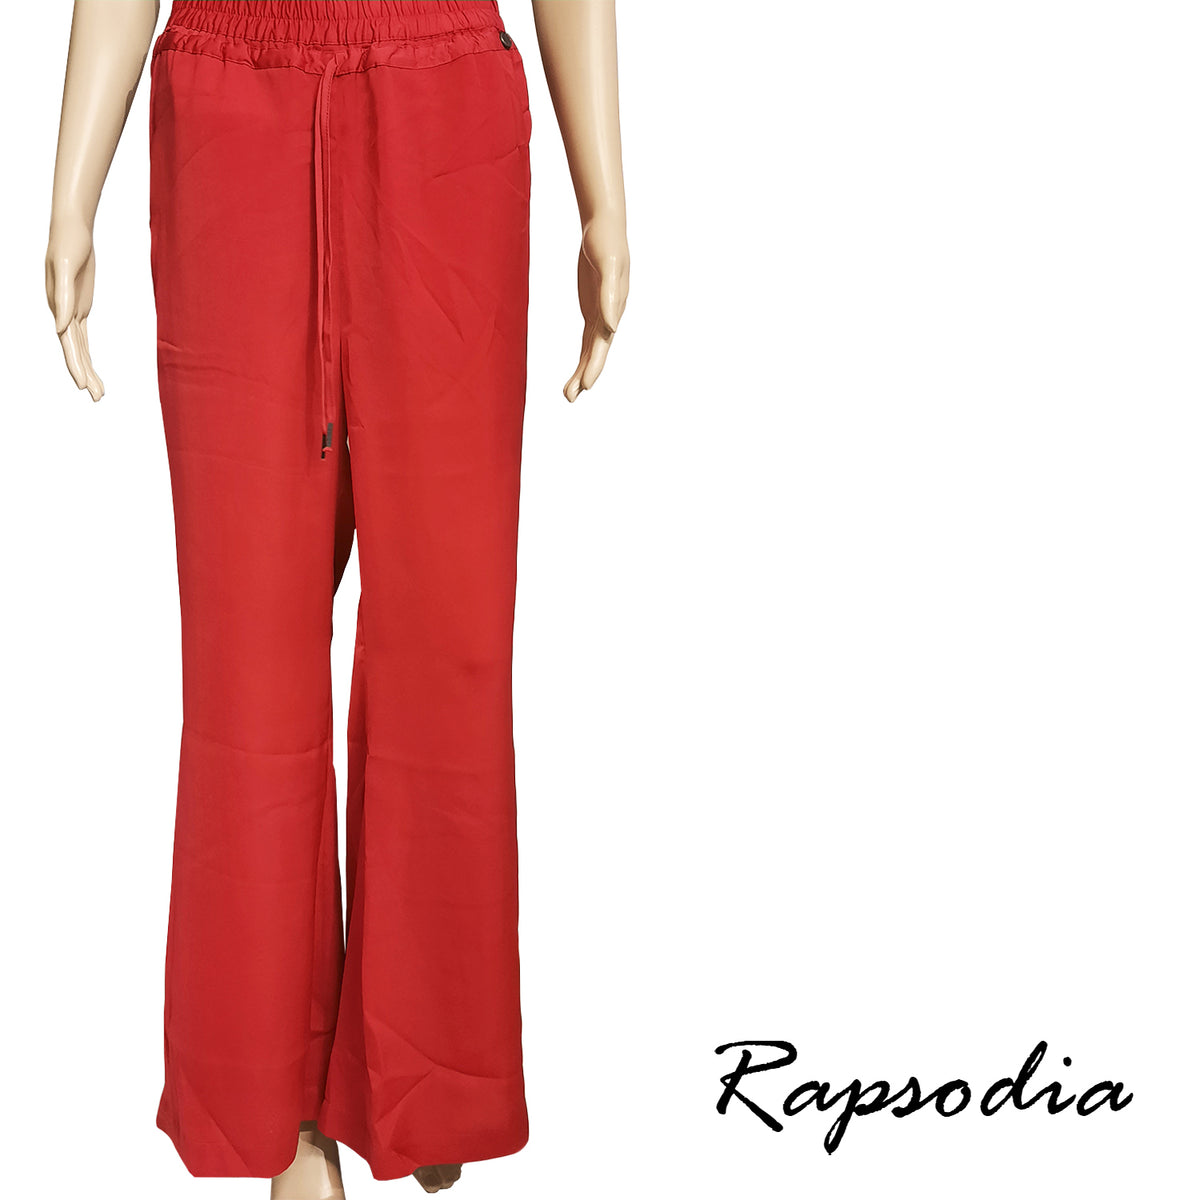 Pantalon Rapsodia Fla Rojo